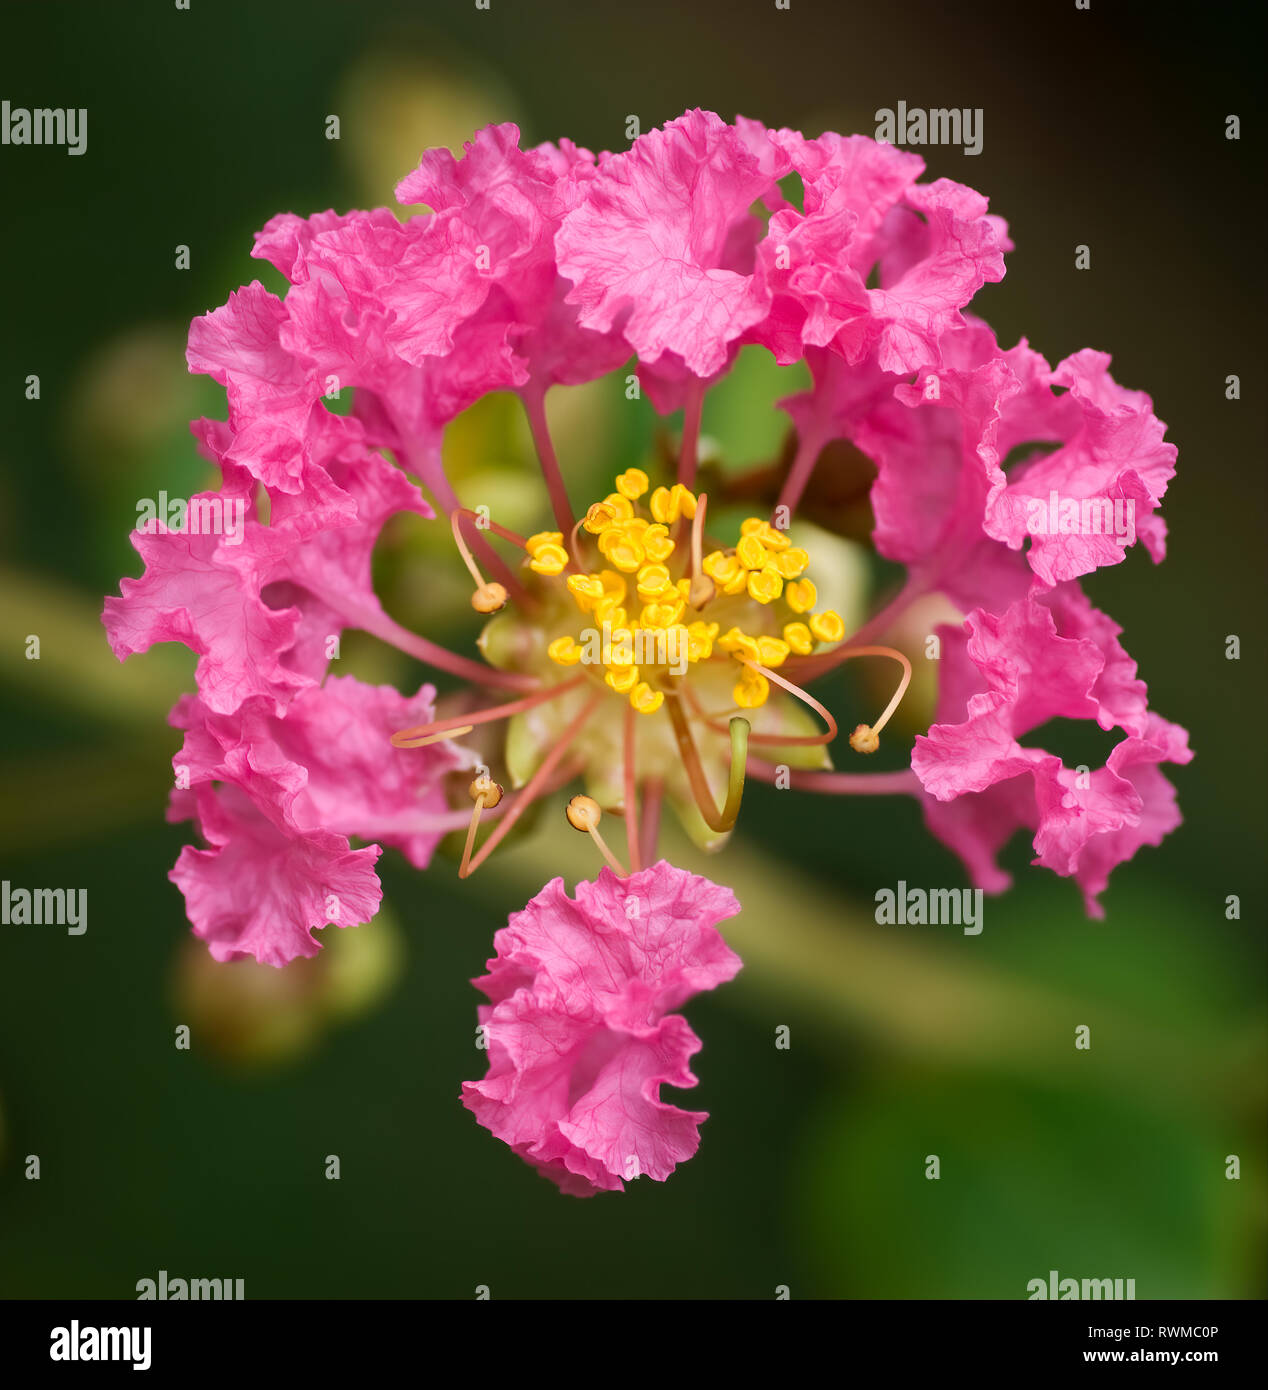 Einzelne Blume des crape Myrtle Baum (Lagerstroemia indica). Blumen werden in der Regel in großen Clustern geschätzt, aber nicht als einzelne Blüten. Stockfoto